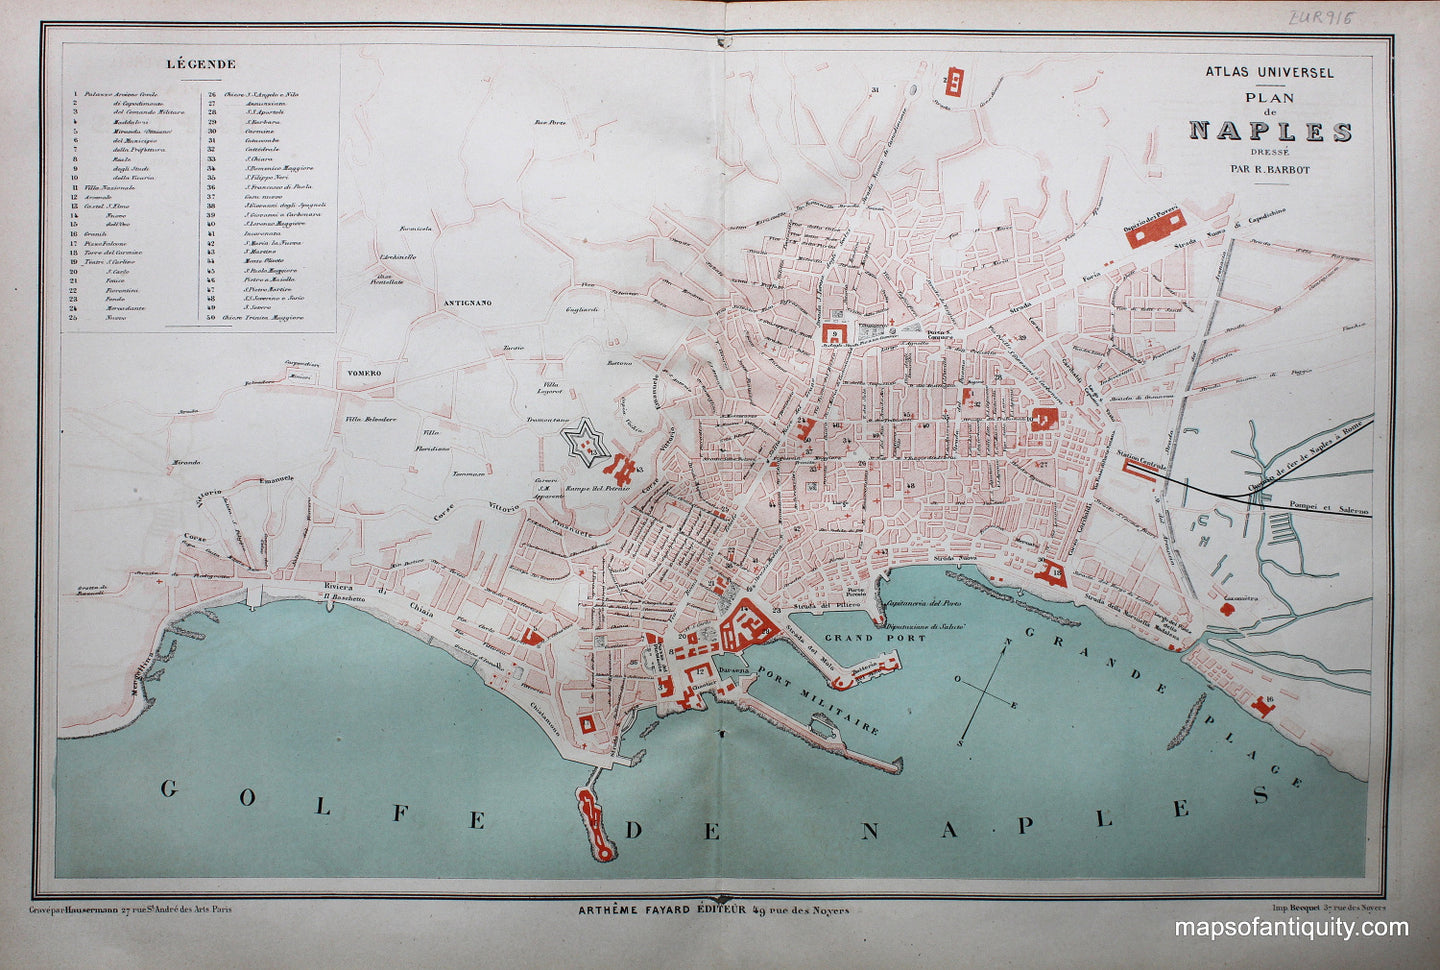 Antique-Map-Plan-de-Naples-Italy-Atlas-Universel-Italy-Fayard-1877-1870s-1800s